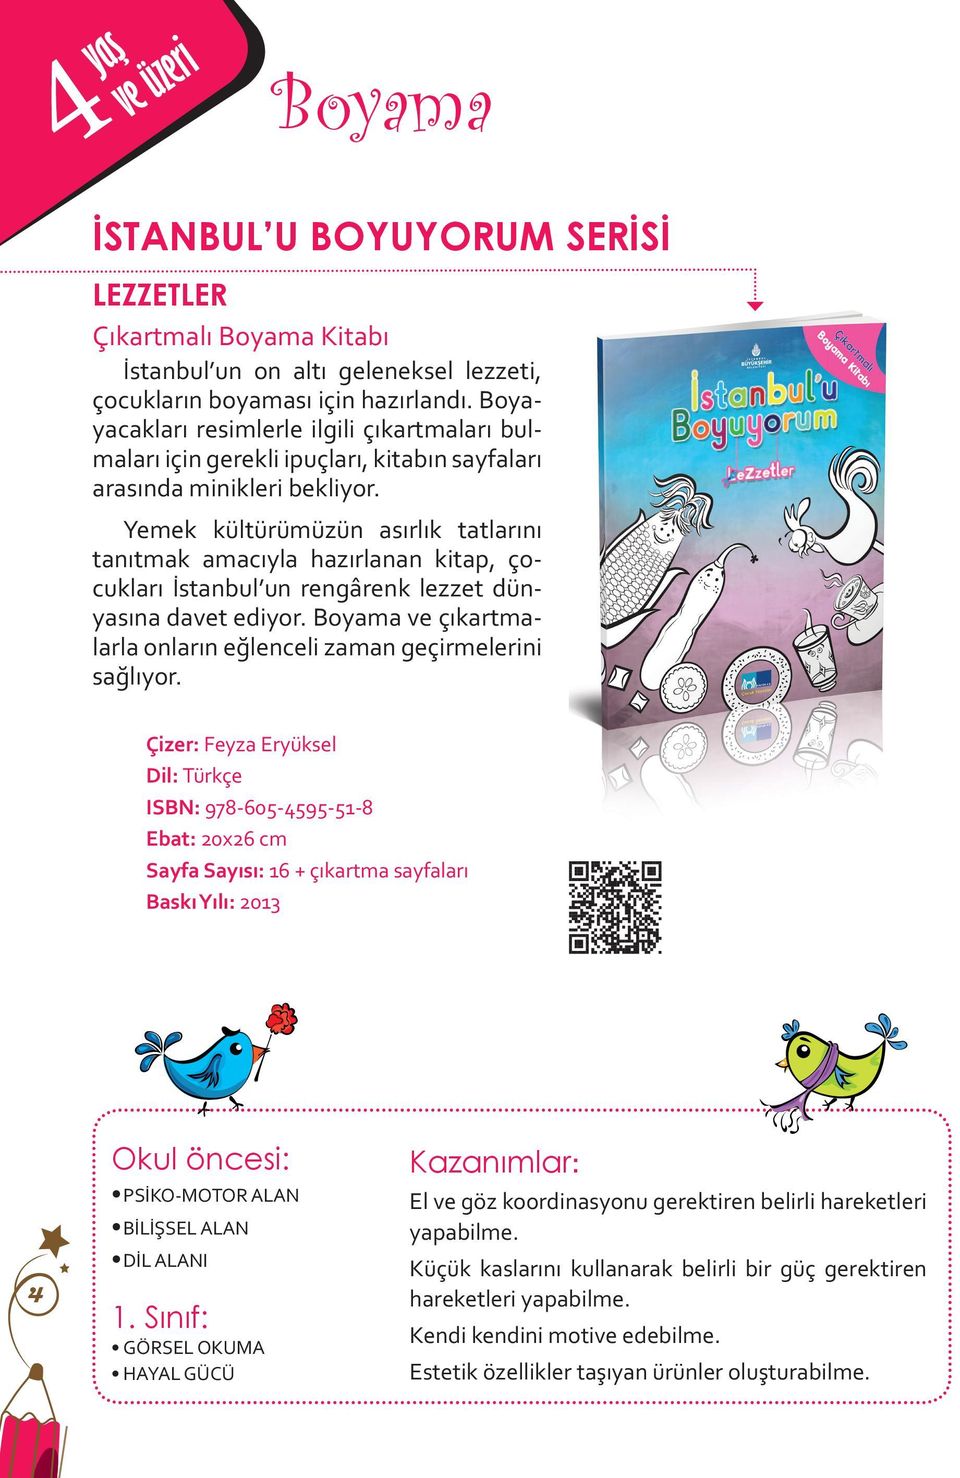 Yemek kültürümüzün asırlık tatlarını tanıtmak amacıyla hazırlanan kitap, çocukları İstanbul un rengârenk lezzet dünyasına davet ediyor.